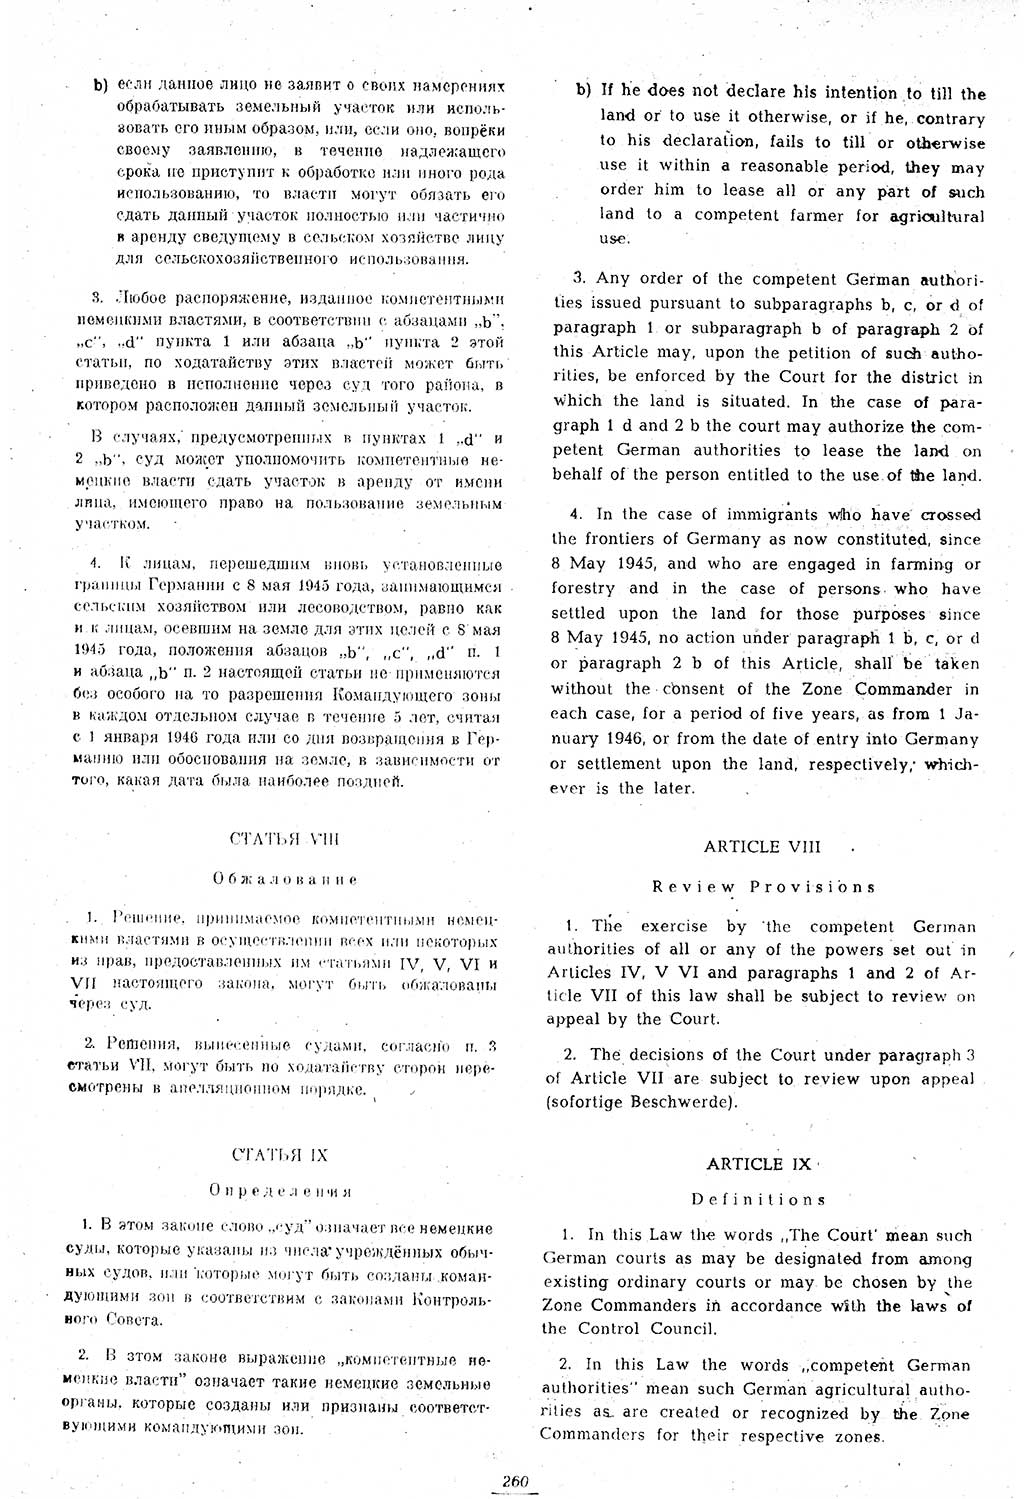 Amtsblatt des Kontrollrats (ABlKR) in Deutschland 1947, Seite 260/1 (ABlKR Dtl. 1947, S. 260/1)